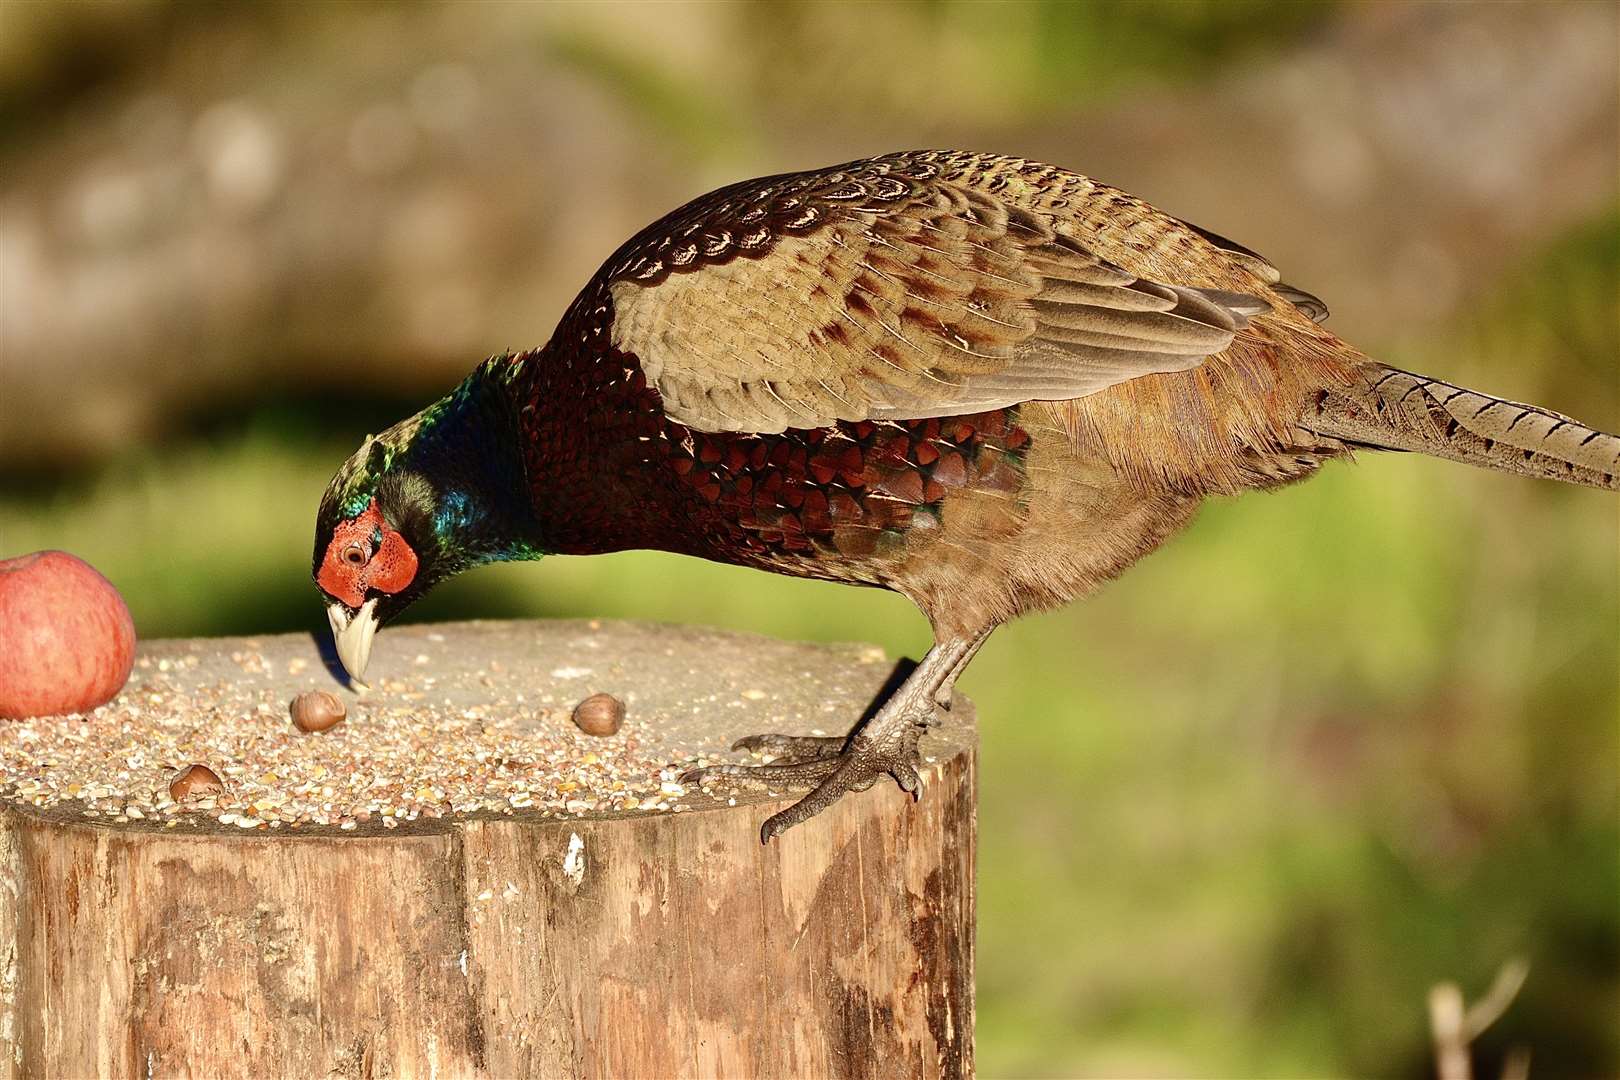 A pheasant enjoying a treat at Spynie bird hide.